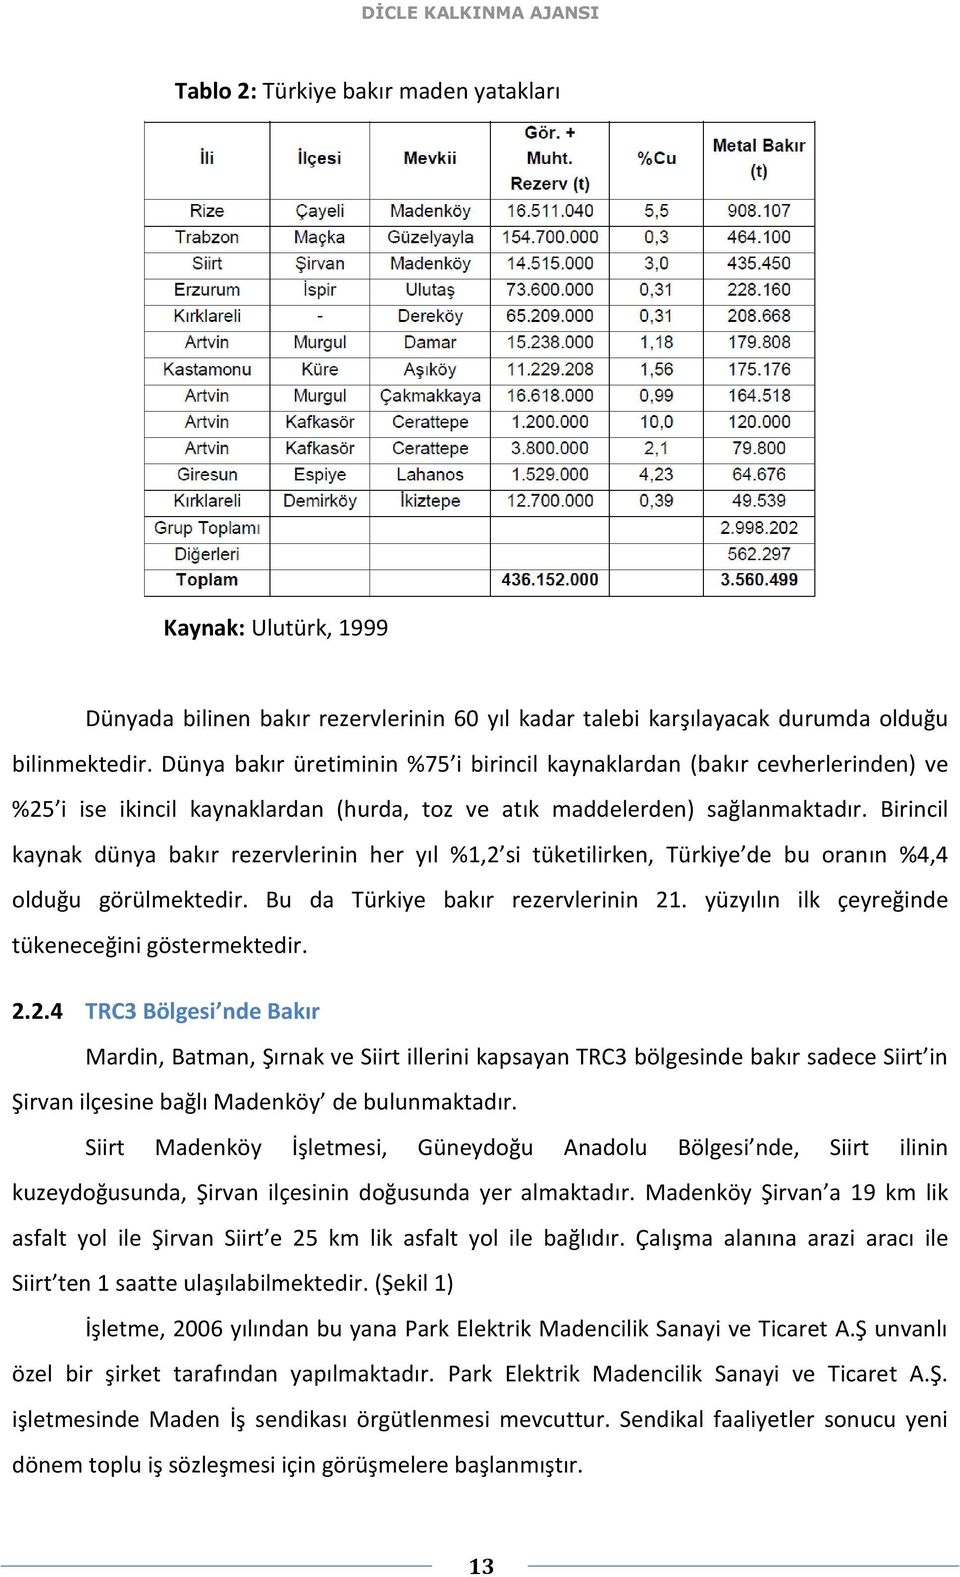 Birincil kaynak dünya bakır rezervlerinin her yıl %1,2 si tüketilirken, Türkiye de bu oranın %4,4 olduğu görülmektedir. Bu da Türkiye bakır rezervlerinin 21.